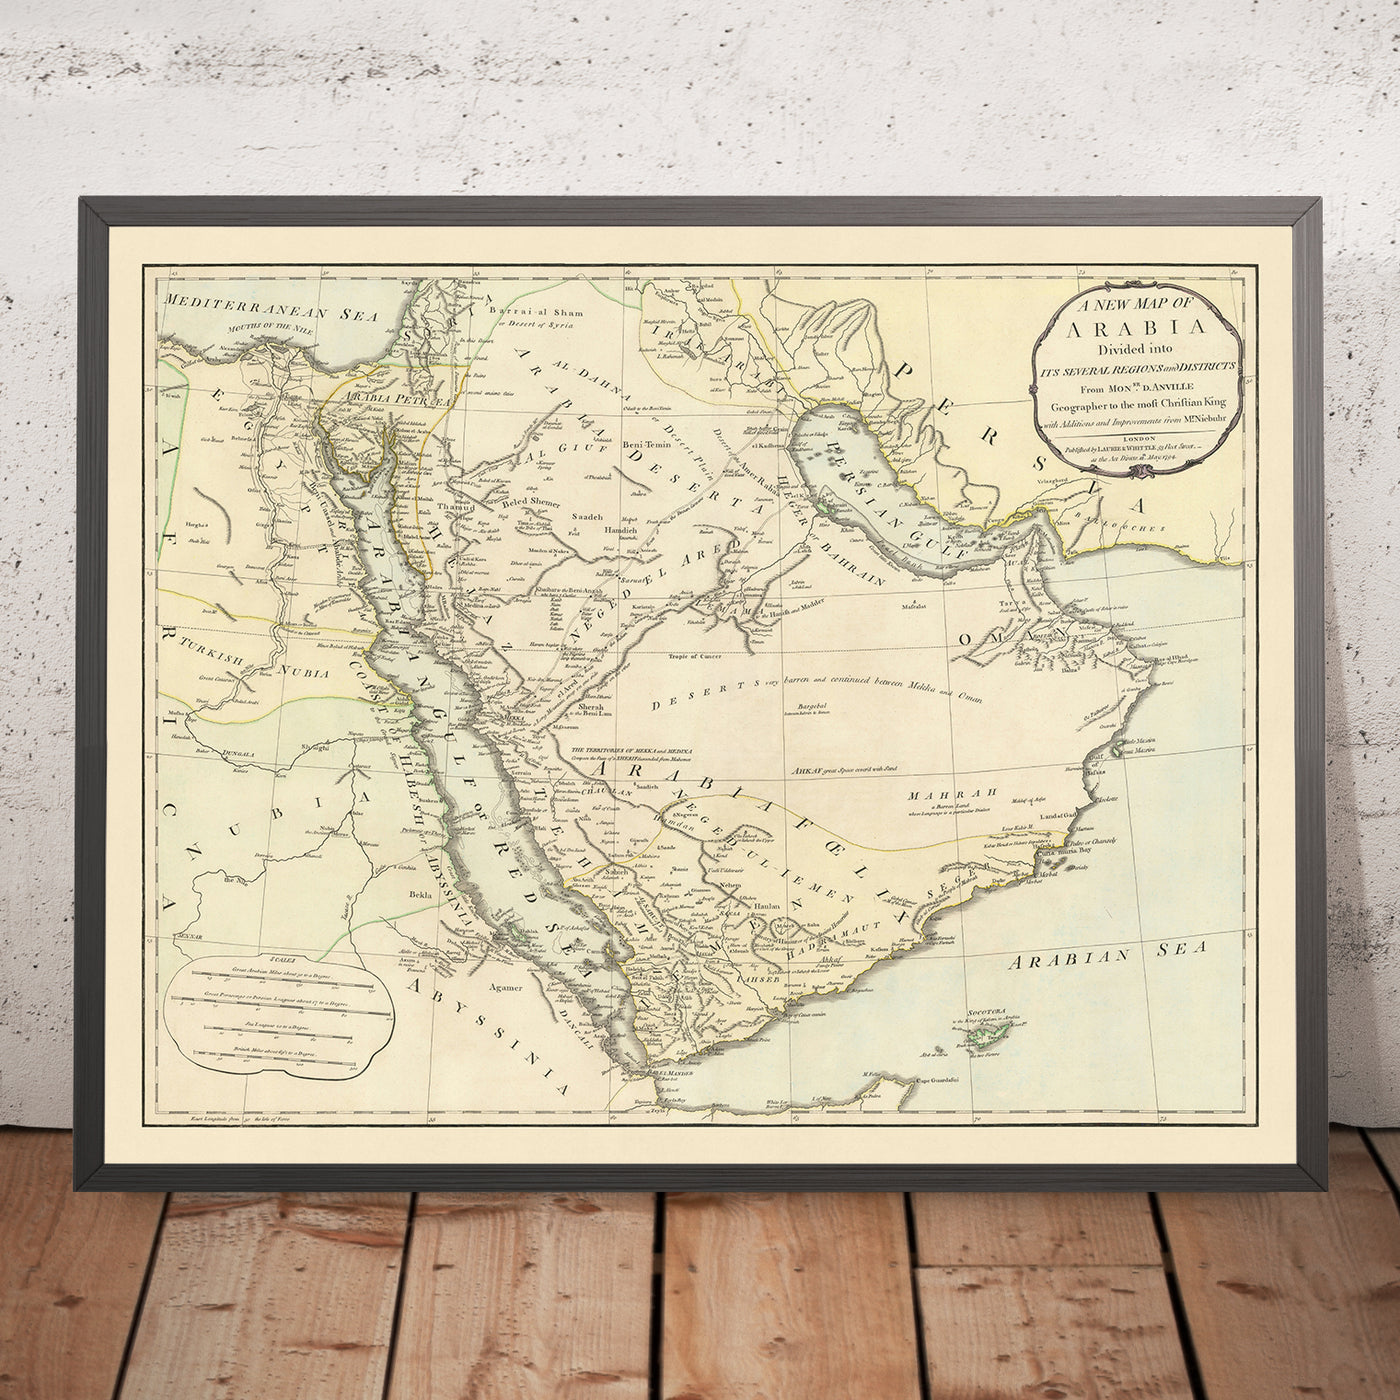 Alte Karte des Nahen Ostens von Laurie & Whittle, 1794: Karge Wüste, Karawanenrouten nach Damaskus, Inseln Bahrain, Samara und Pasteles, Emirat Ras Al Khaimah und die Weiße Moschee.